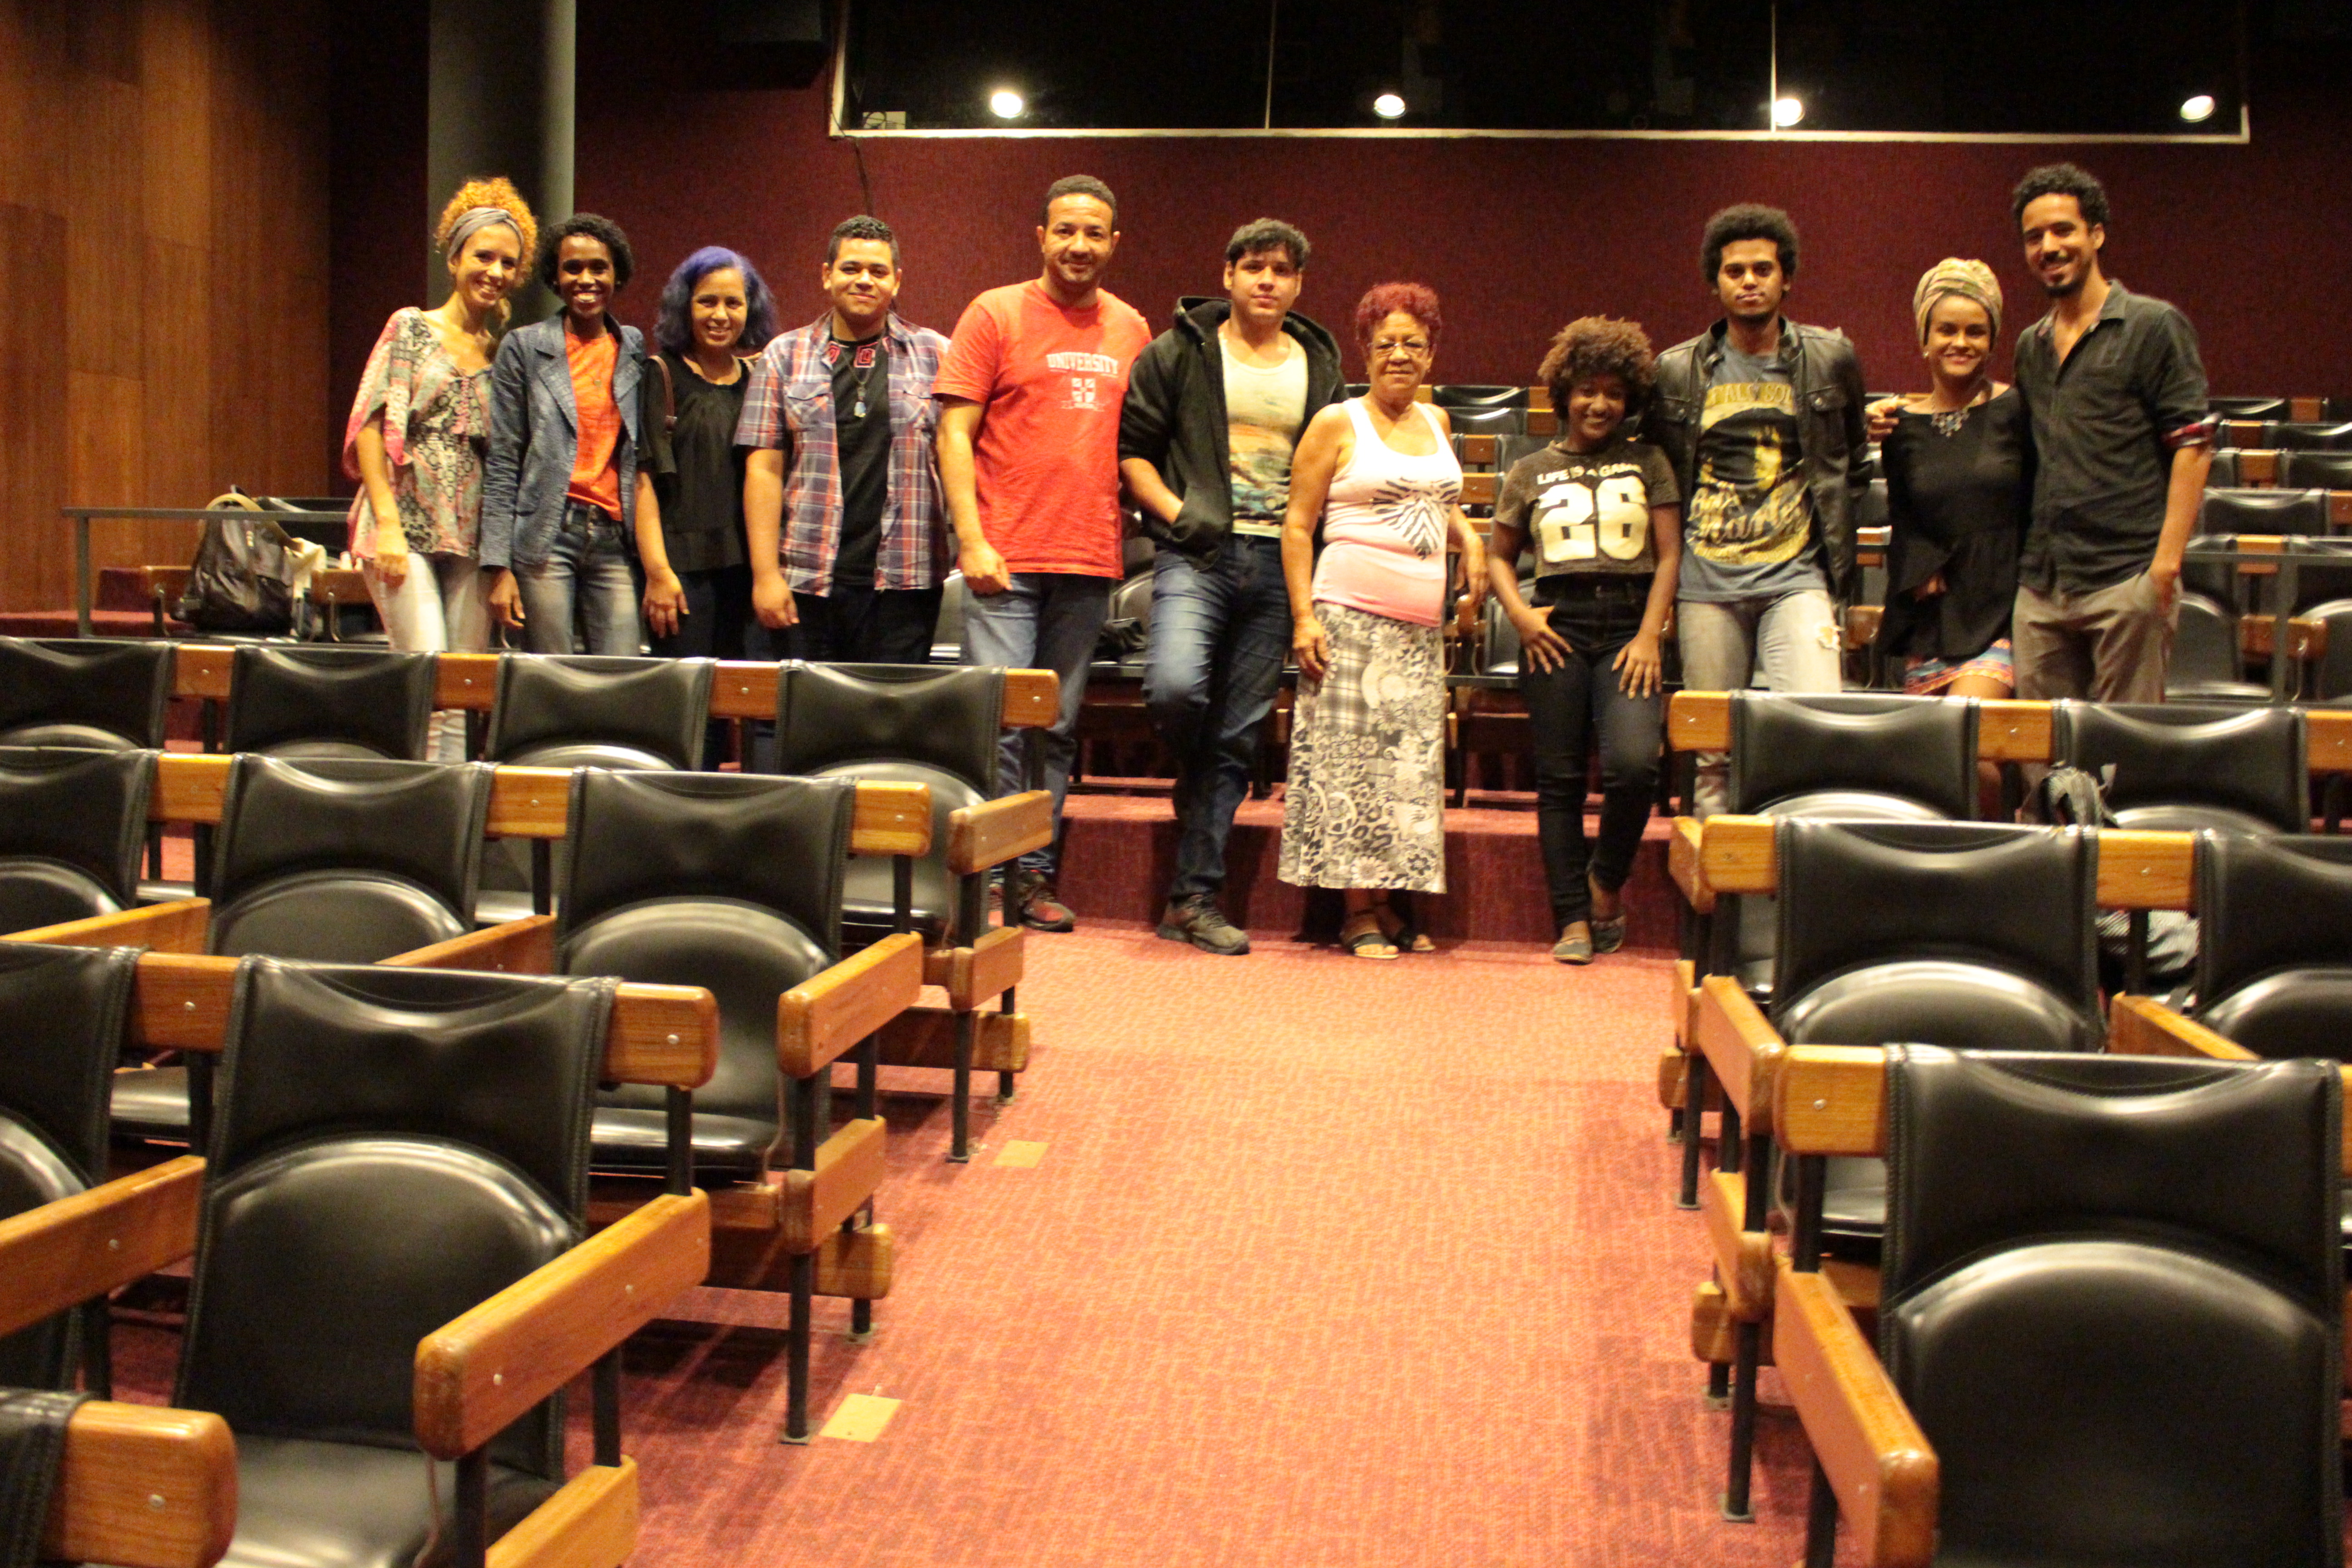 Grupo cultural de Realengo lança filme na Cinemateca do MAM